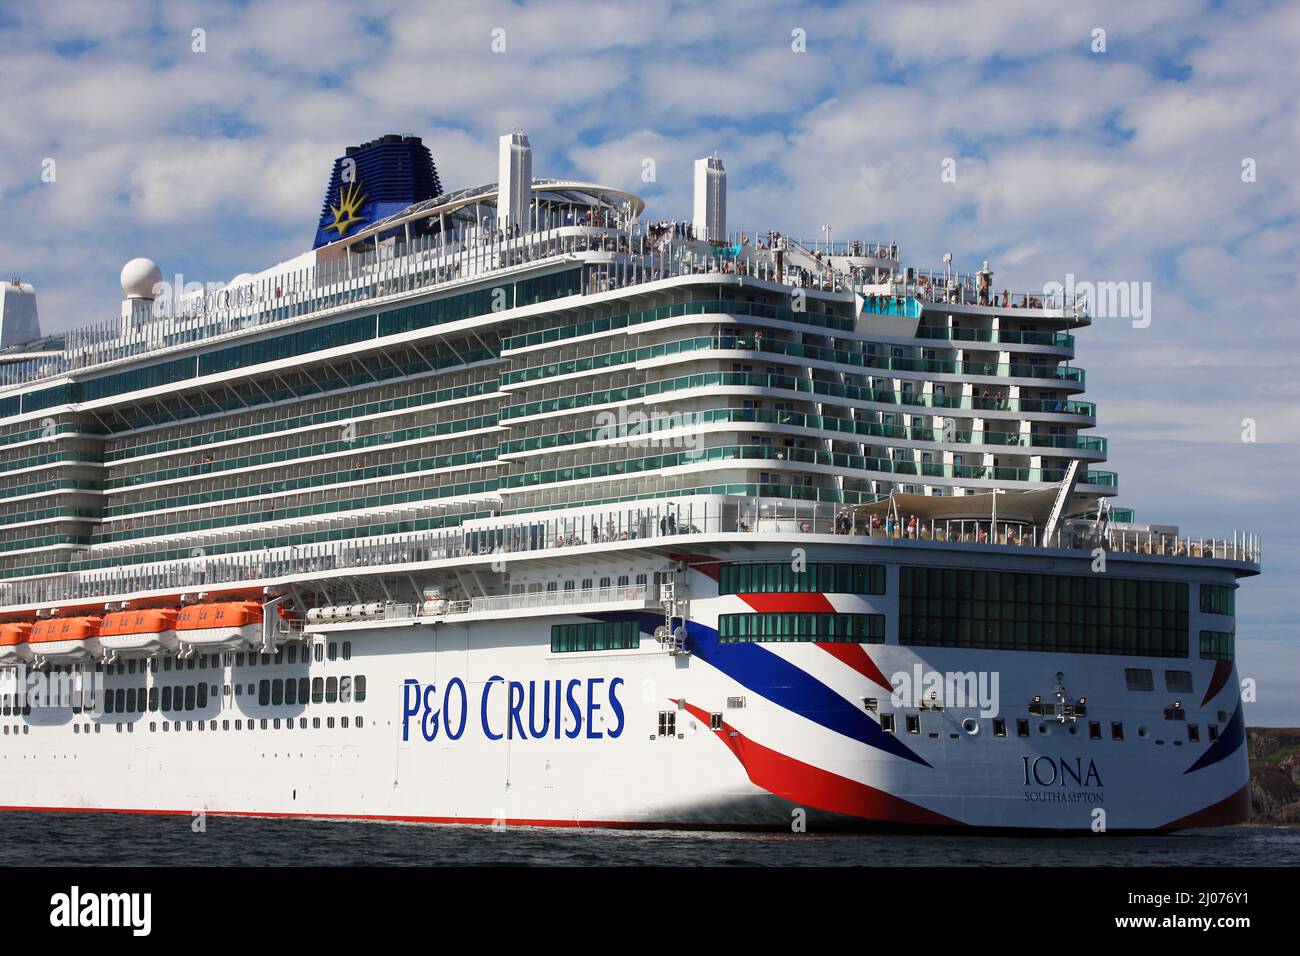 P & O Cruises, paquebot de croisière, Iona, à l'occasion de son premier voyage, a amarré son île d'Iona, dans les Hébrides intérieures d'Écosse Banque D'Images